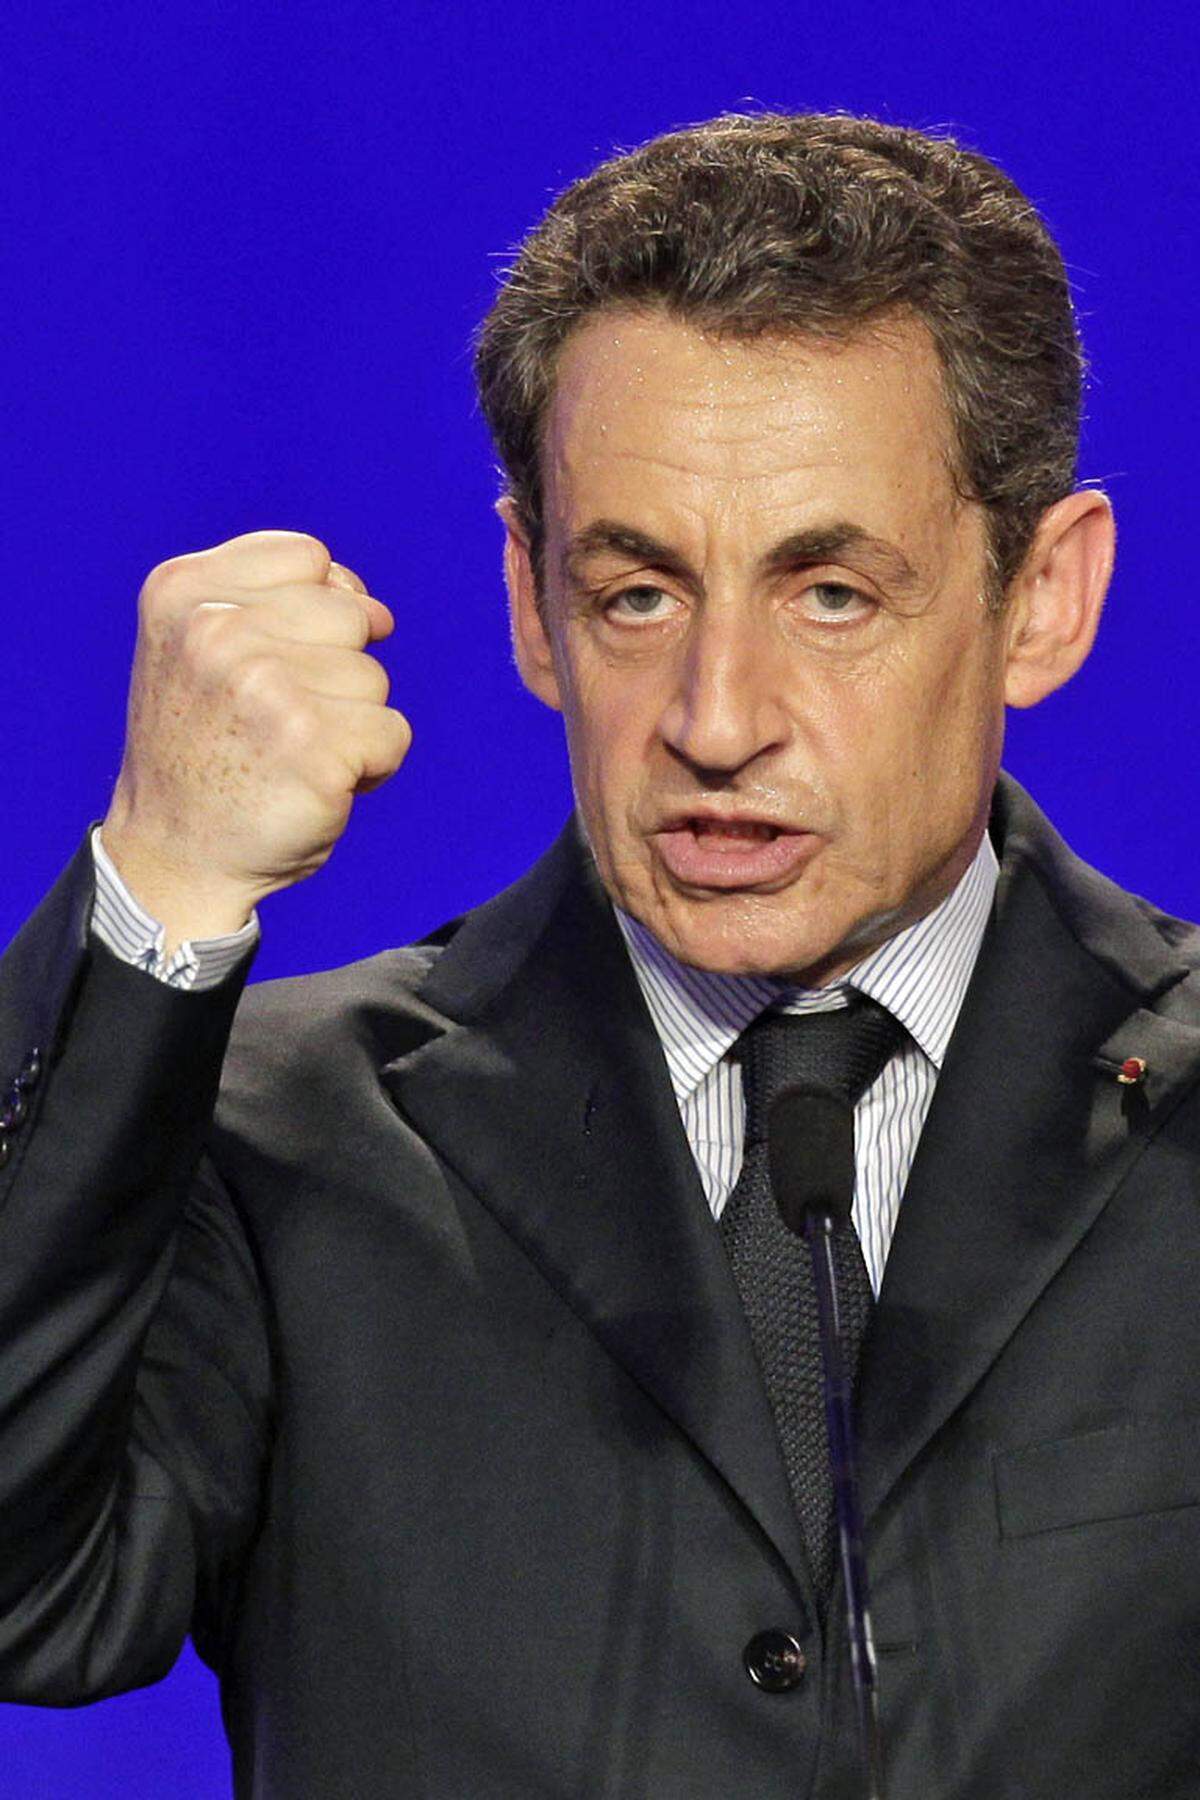 Die Entscheidung machte den Weg frei für den konservativen Kandidaten Nicolas Sarkozy, der sich im Mai 2007 gegen die Sozialistin Segolene Royal durchsetzte. Der Ex-Innenminister kündigte viele Reformen an, umgesetzt wurde unter anderem die höchst umstrittene Pensionsreform. Im Februar erklärte "Super-Sarko", wie der umtriebige Präsident auch genannt wird, seine Kandidatur für eine zweite Amtszeit.